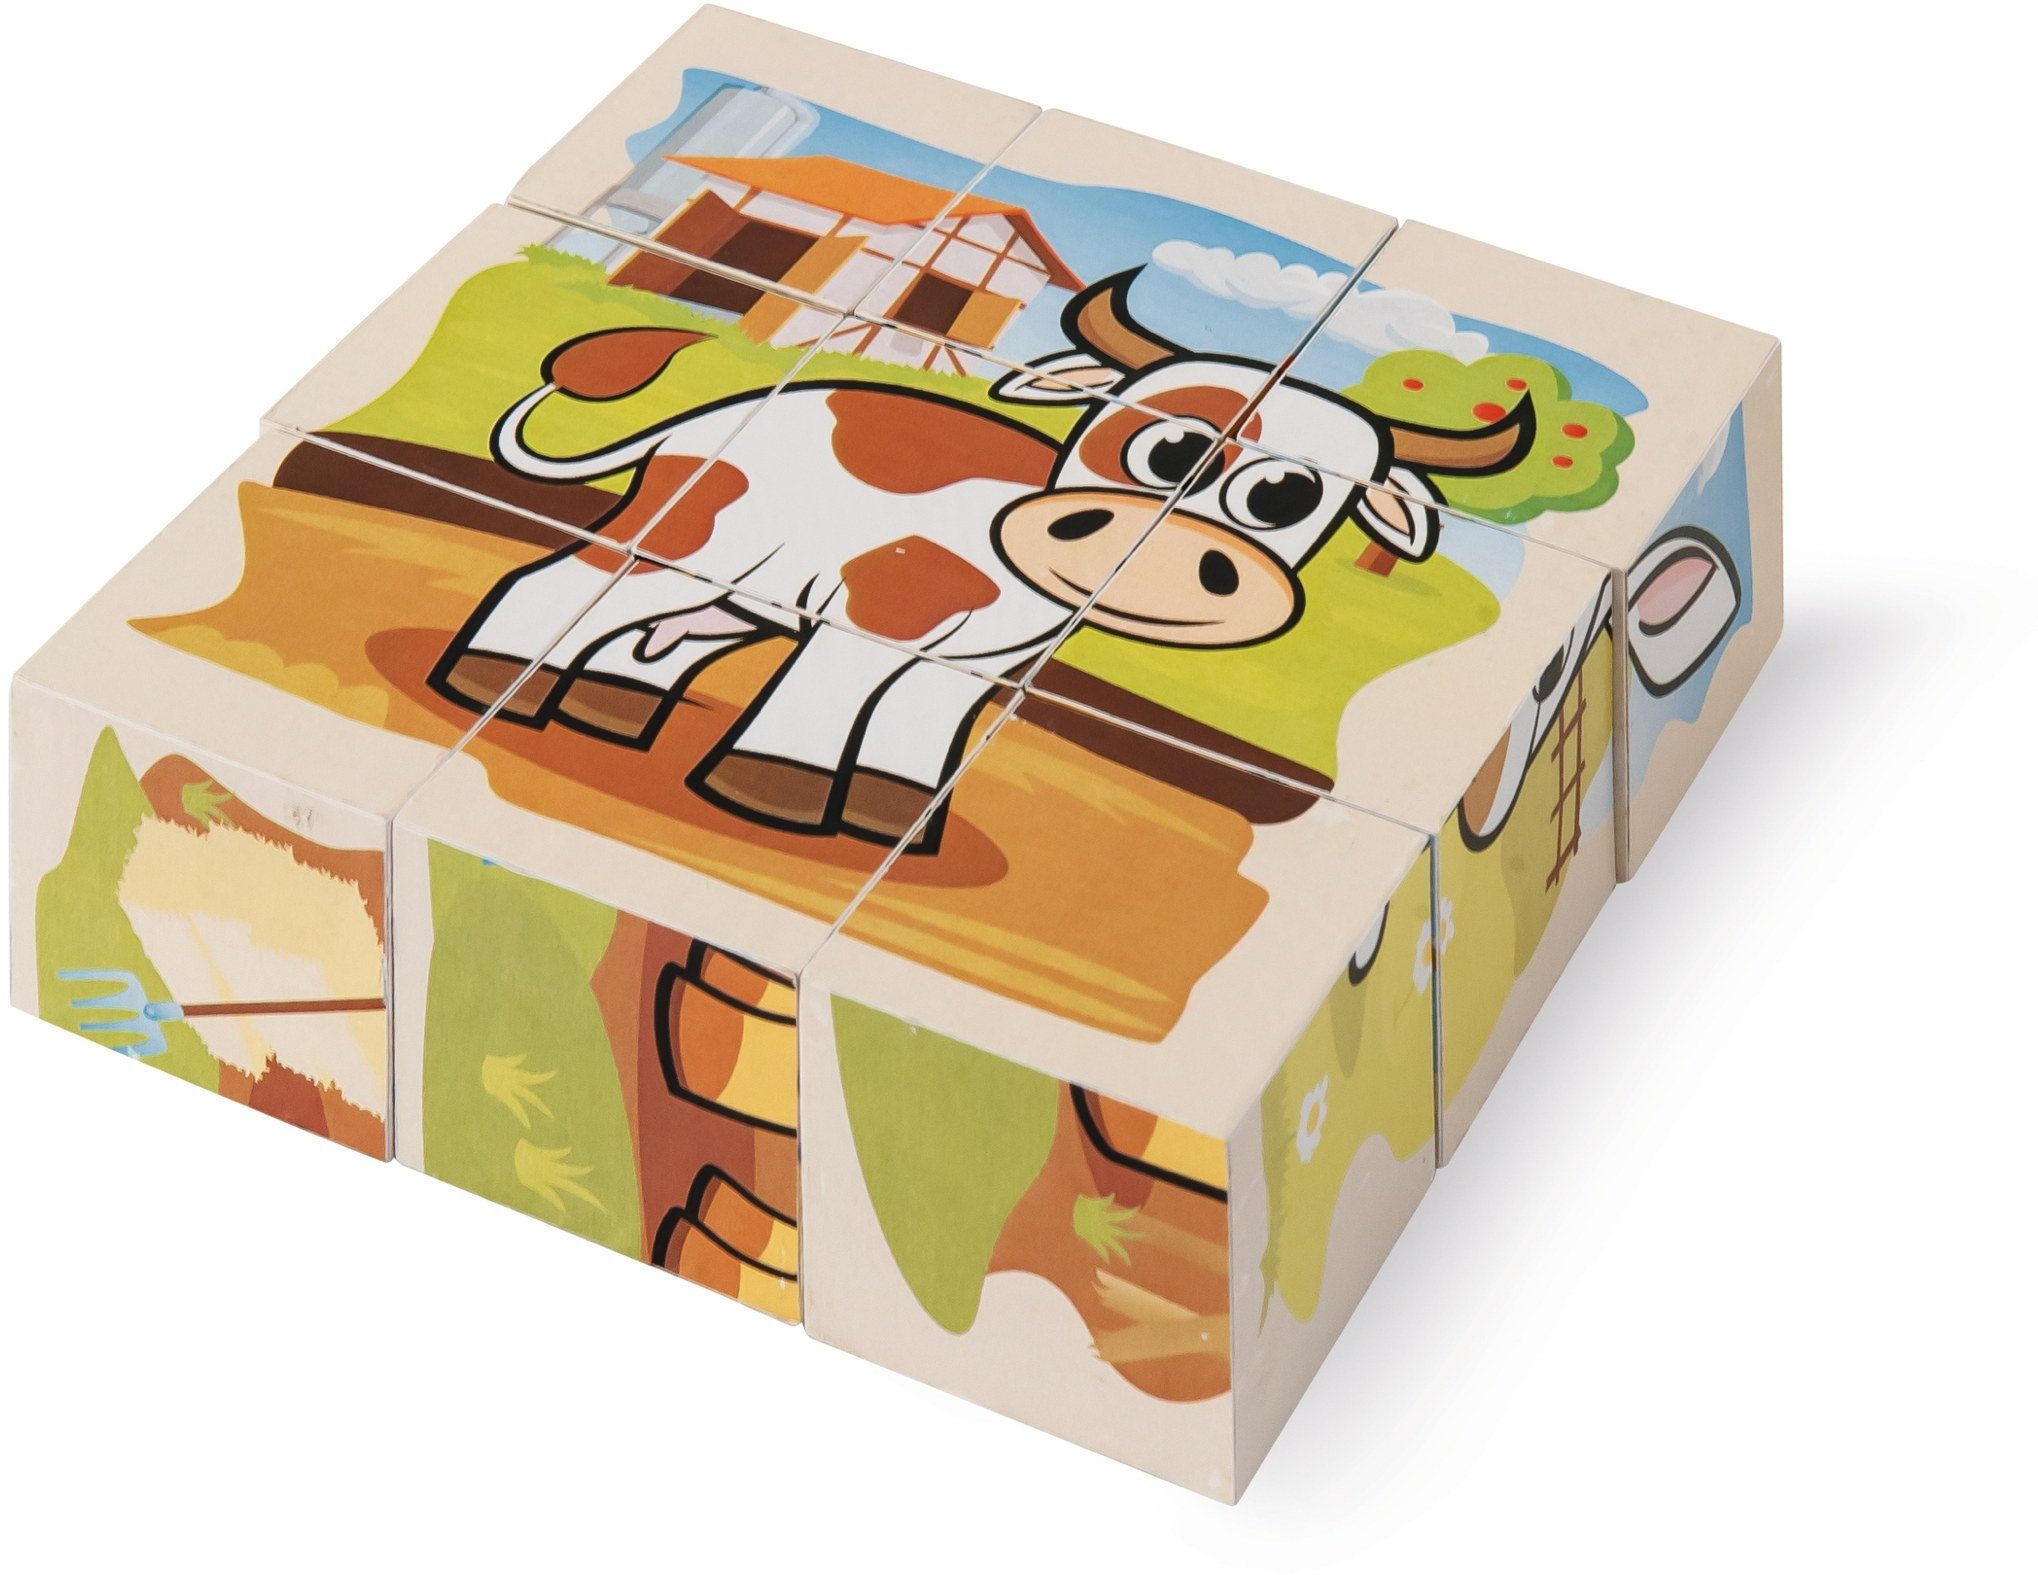 Eichhorn Puzzle Holz Würfel Bauernhof Kinder Teile 9 Puzzleteile 100005203, Puzzle 9